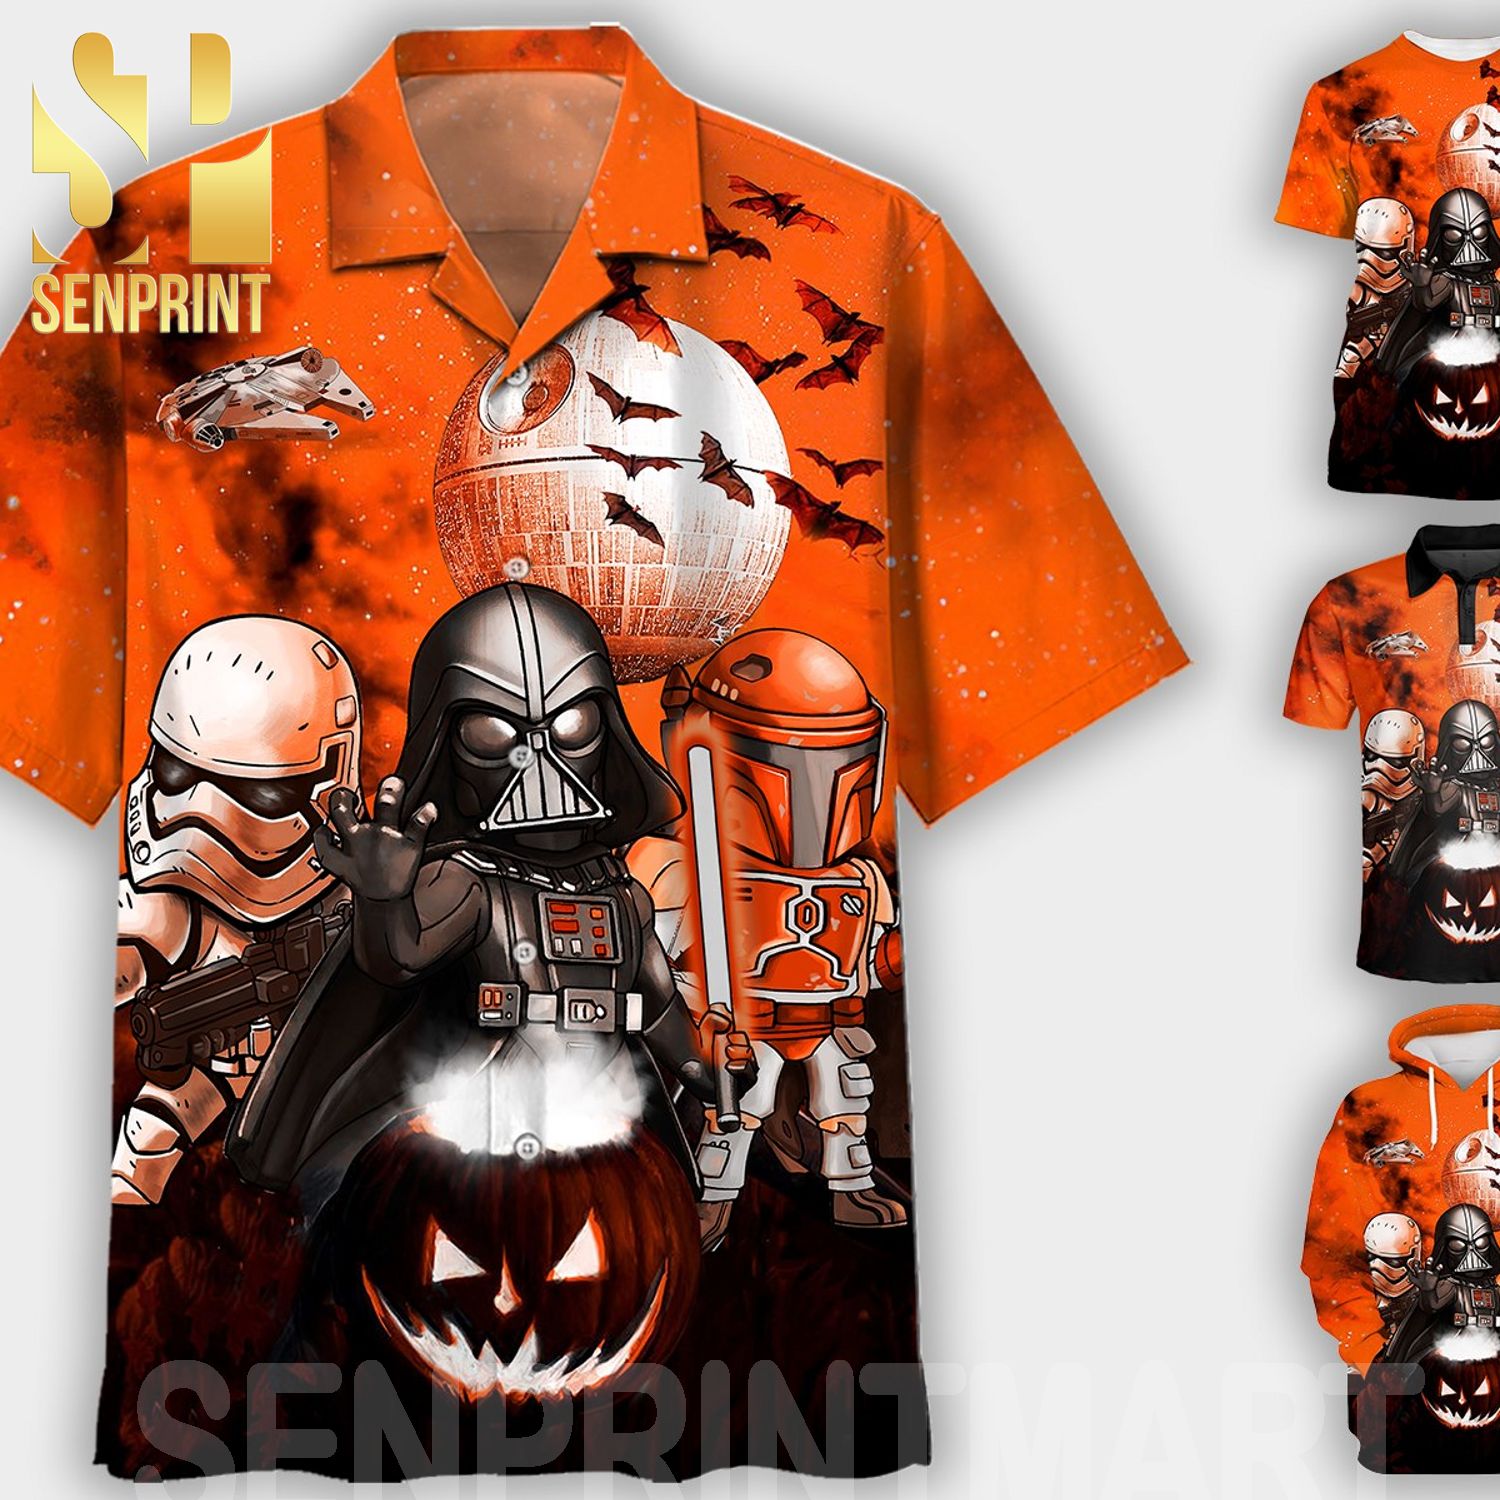 Darth Vader Boba Fett Star Wars Gifts For Fans Full Printing Shirt